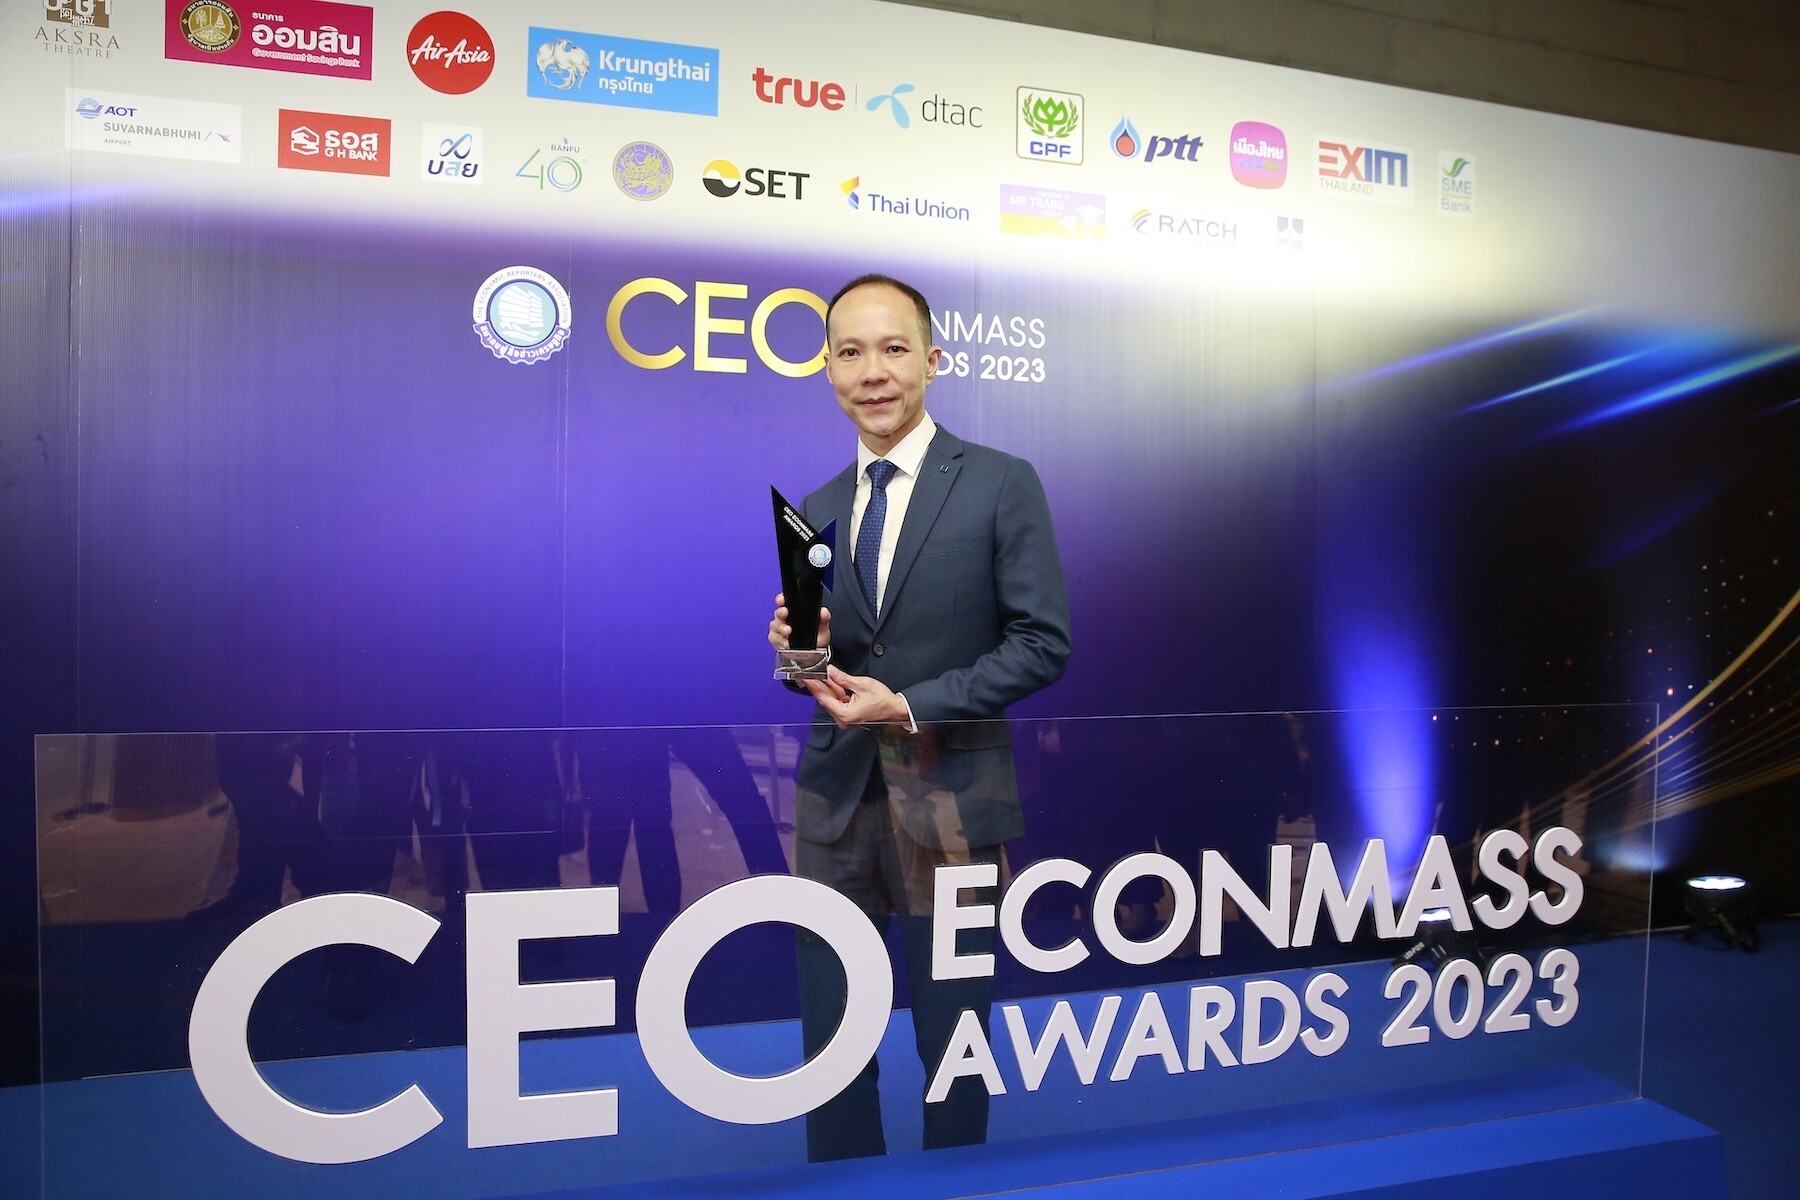 อเล็กซ์ โลท์ จาก SYMC คว้าสุดยอดซีอีโอสาขาเทคโนโลยี จากงาน "CEO ECONMASS Awards 2023"